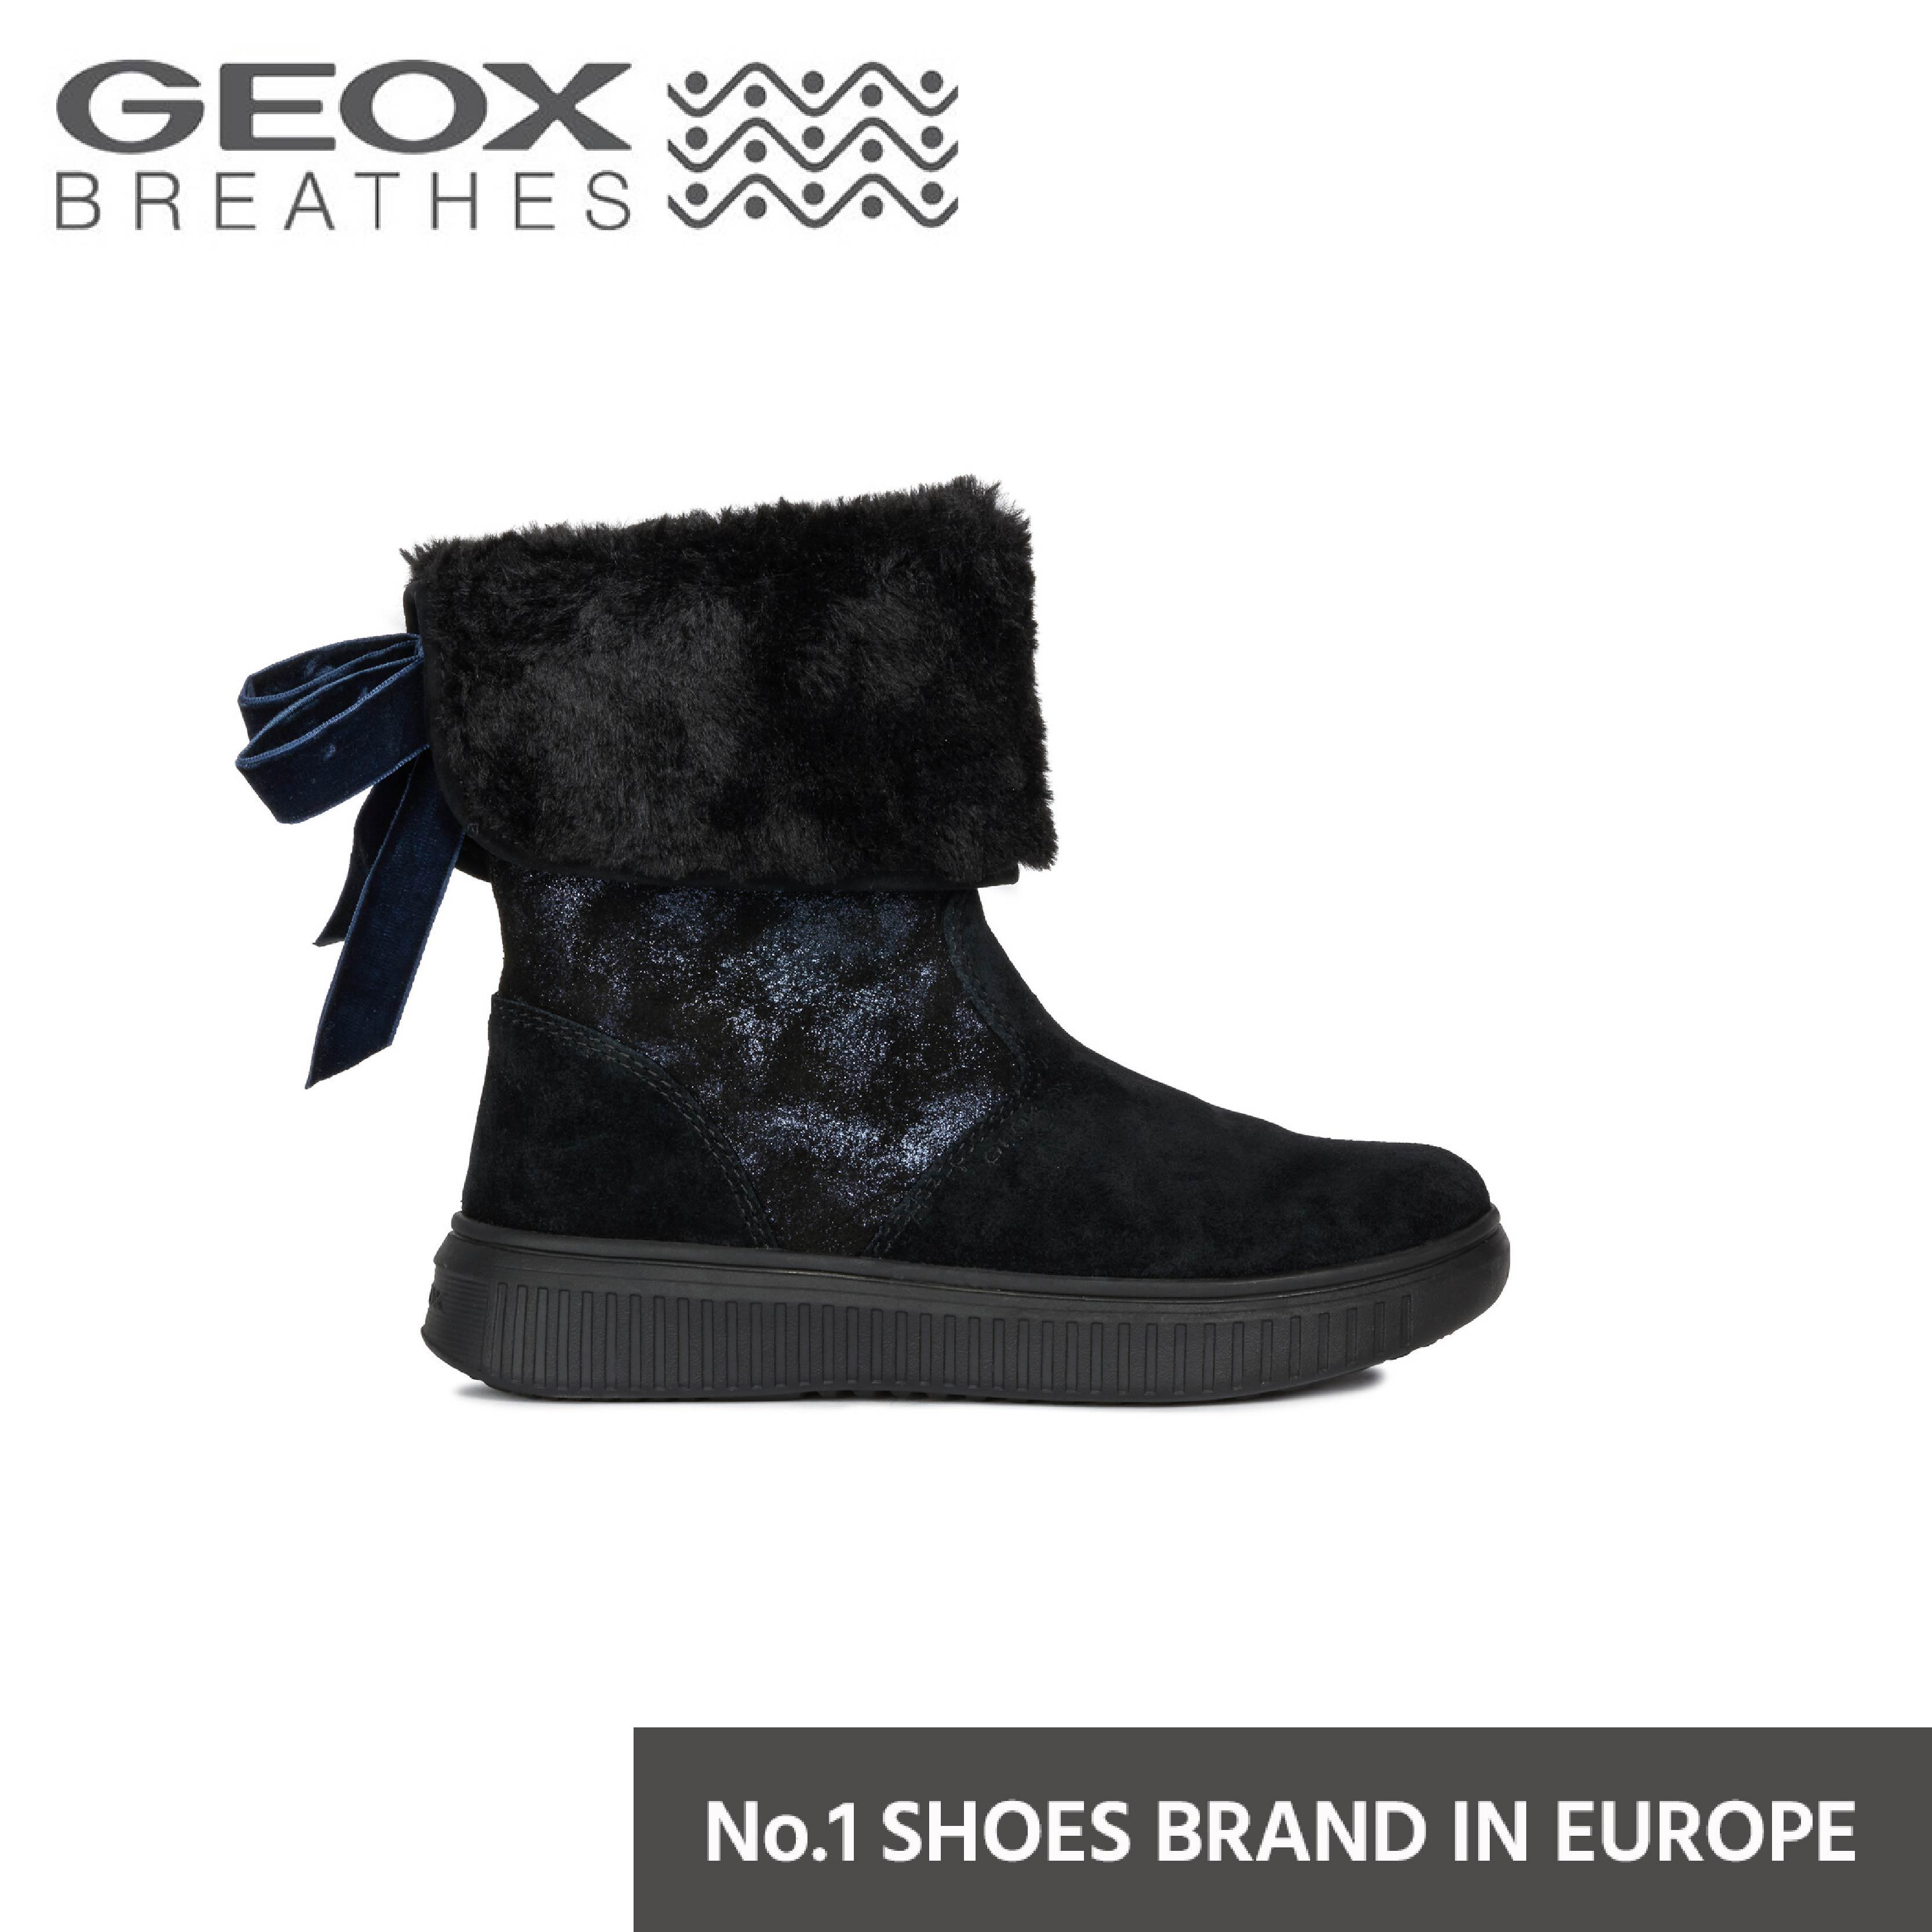 GEOX รองเท้า DISCOMIX G. A รองเท้าเด็ก สีดำ